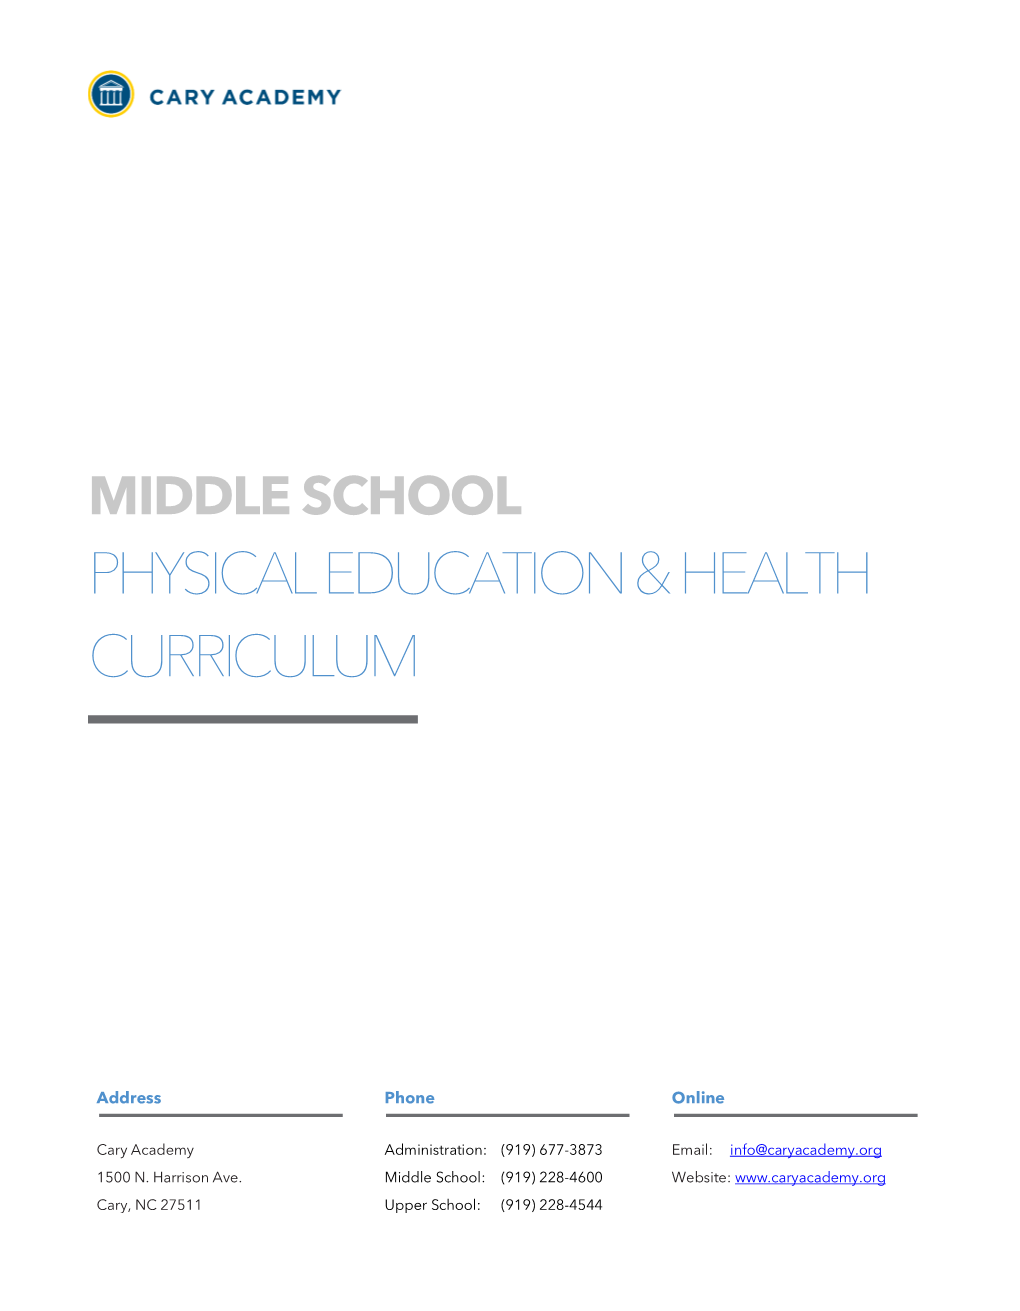 Physical Education & Health Curriculum